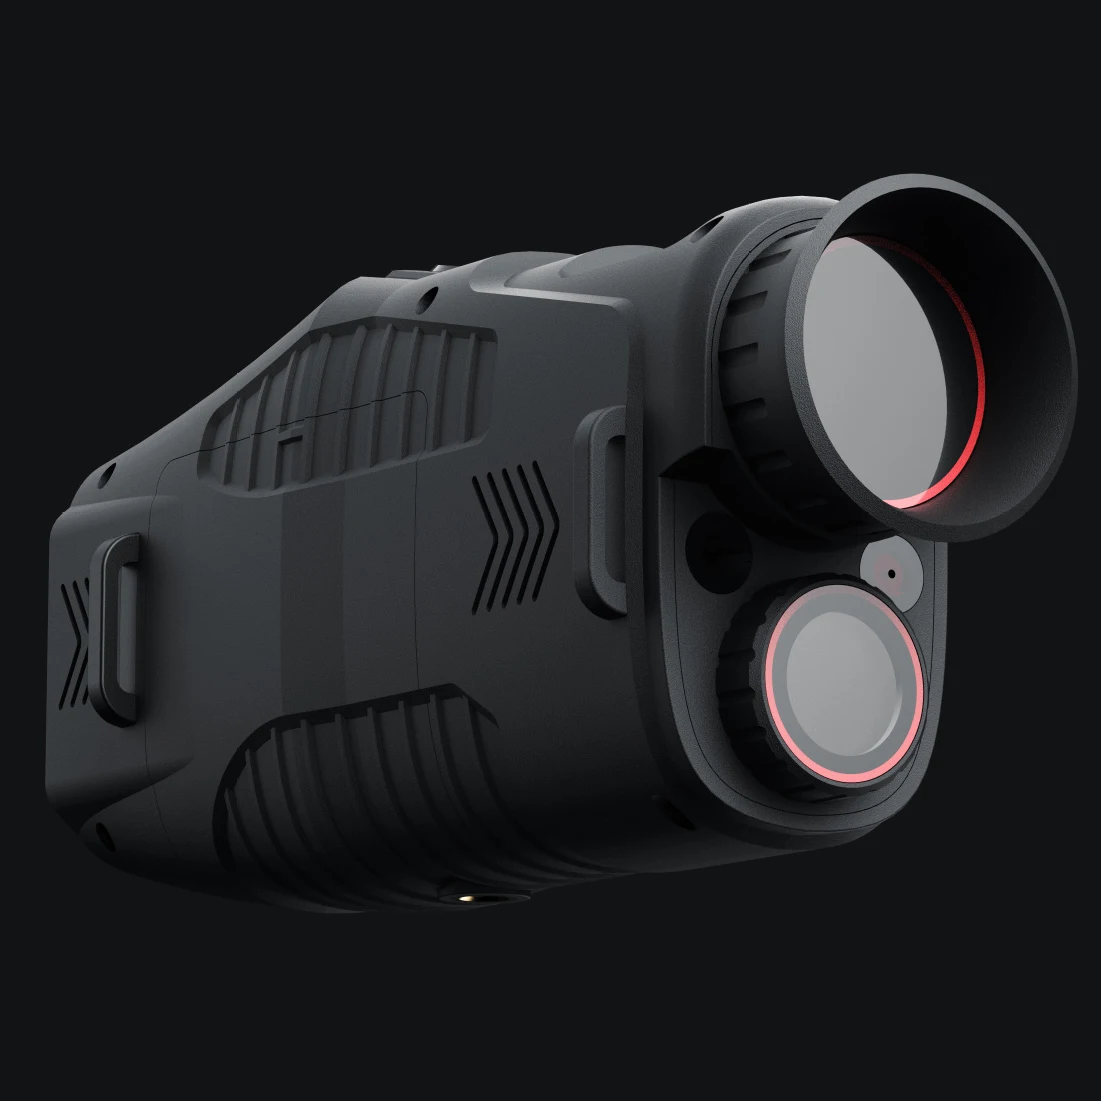 

Монокуляр B50 1080P, инфракрасное устройство ночного видения, для дневного и ночного использования, для фото-и видеосъемки, цифровой, 5 шт., 300 м, полный обзор в темноте, дисплей для охоты